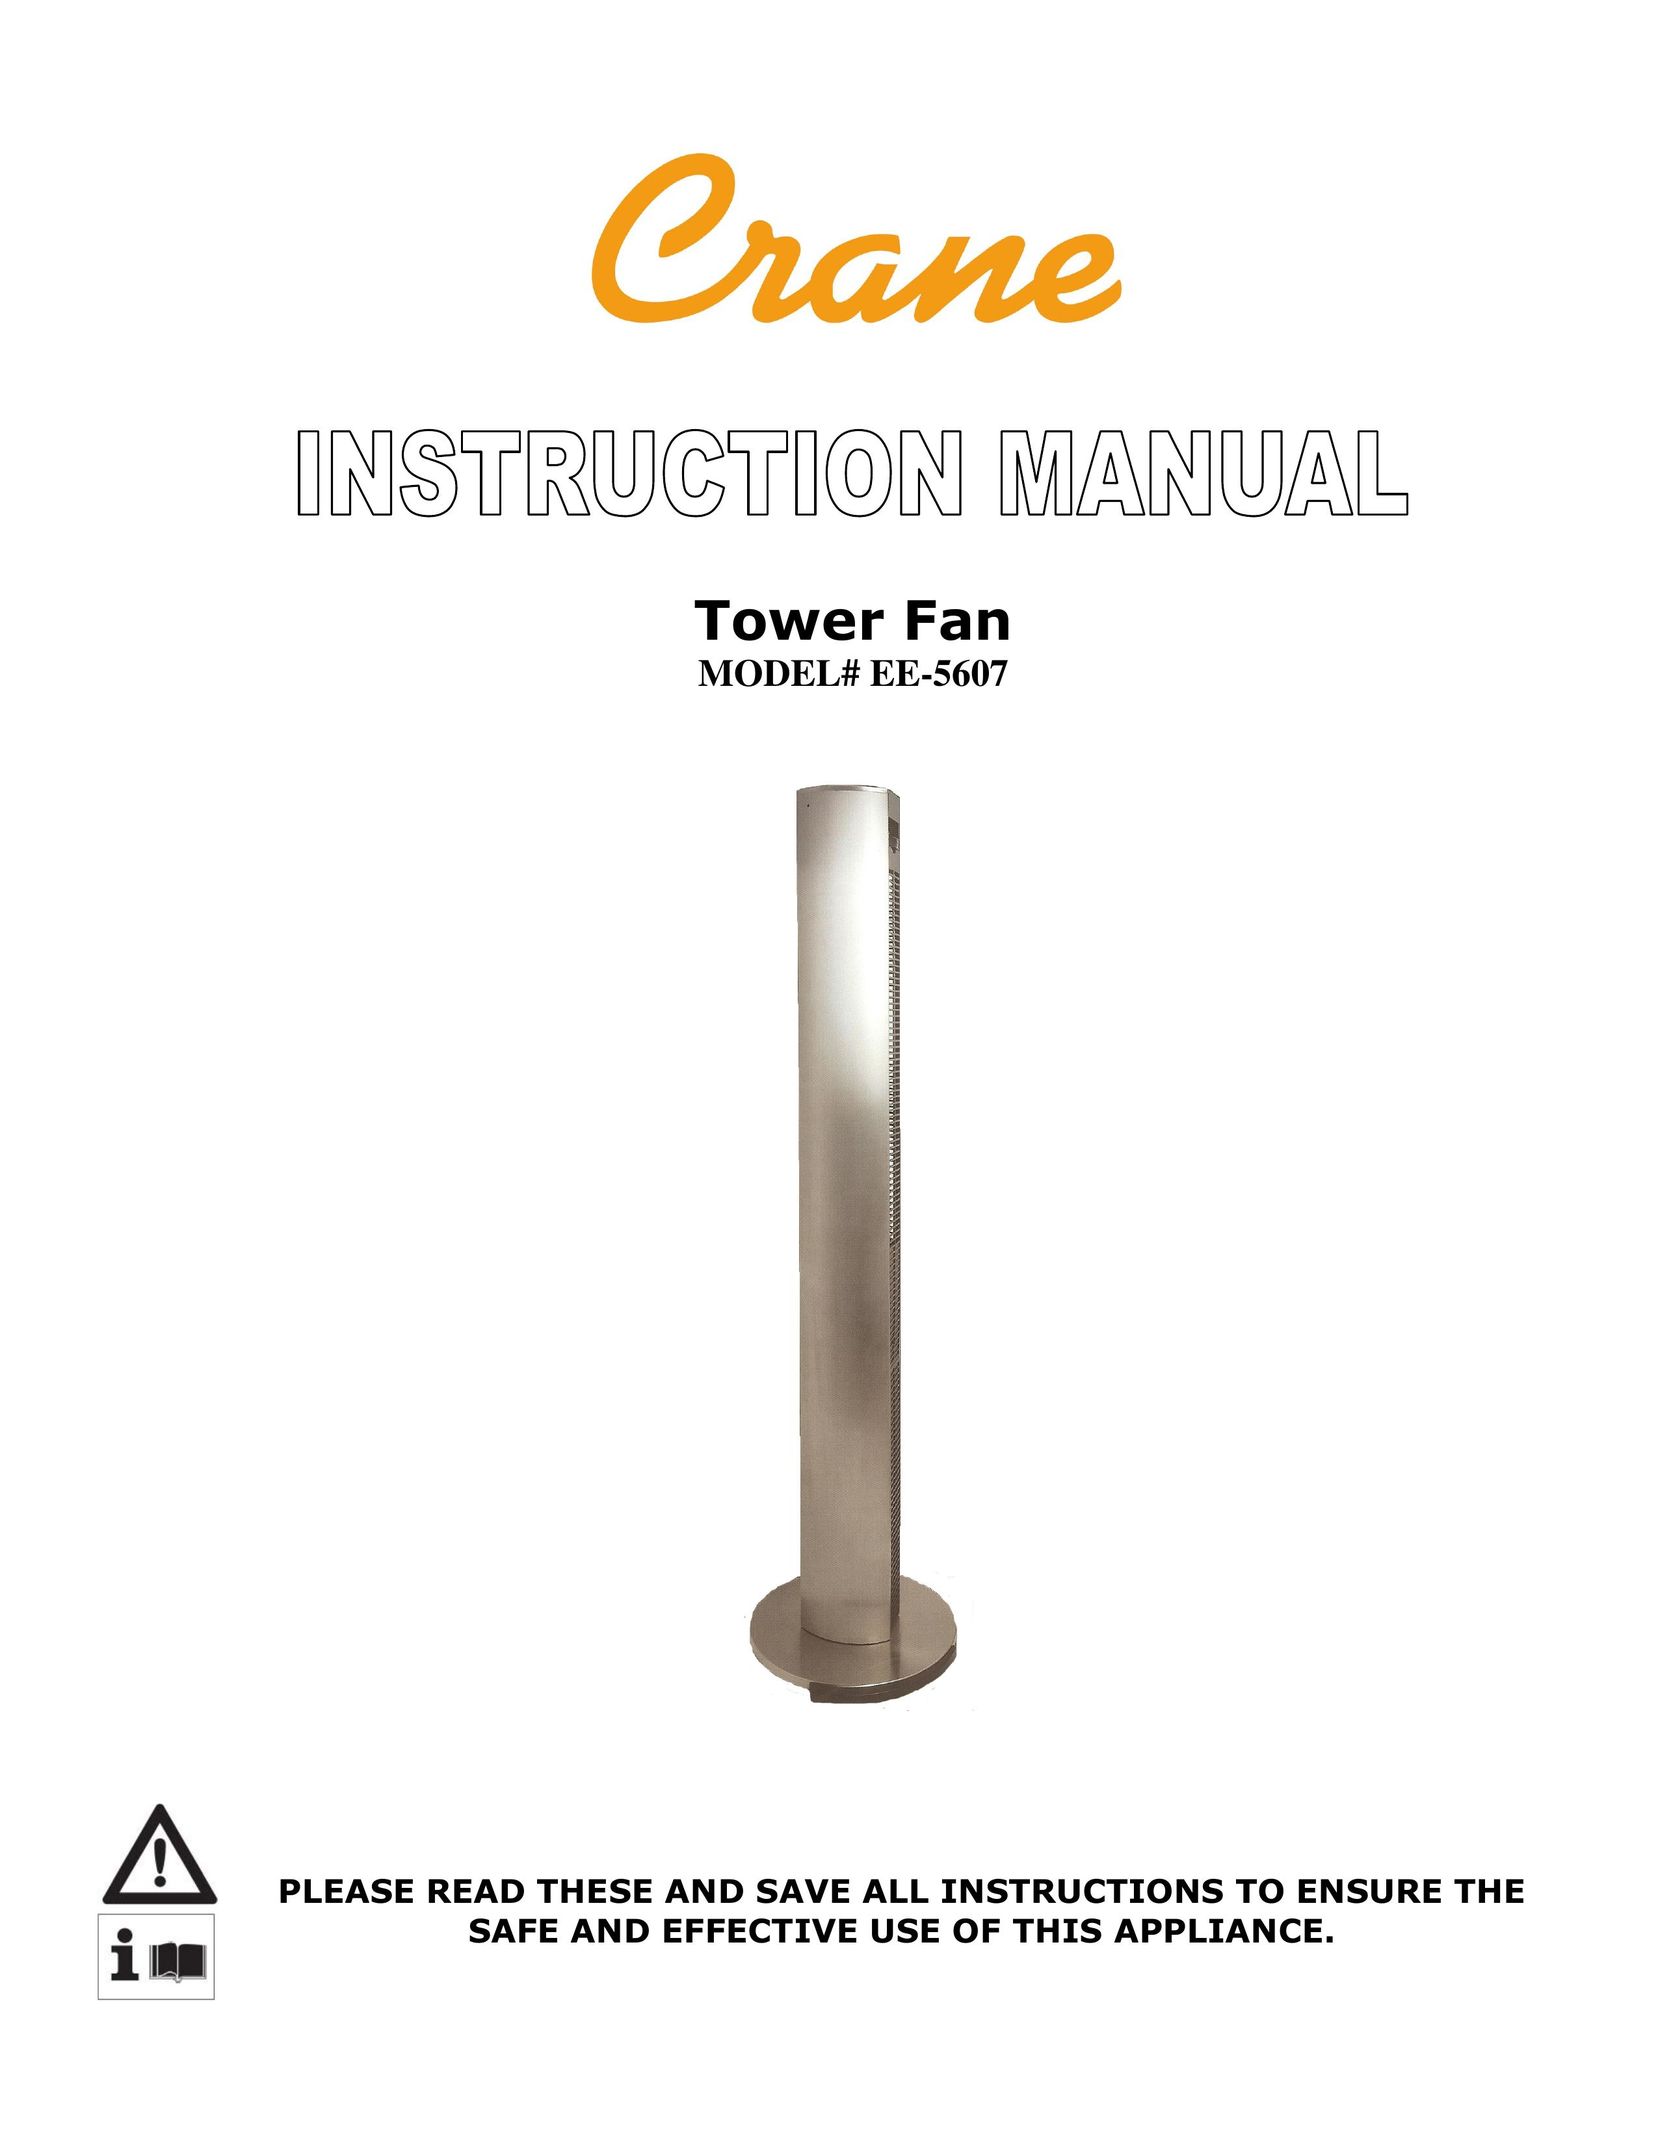 Crane EE-5607 Fan User Manual